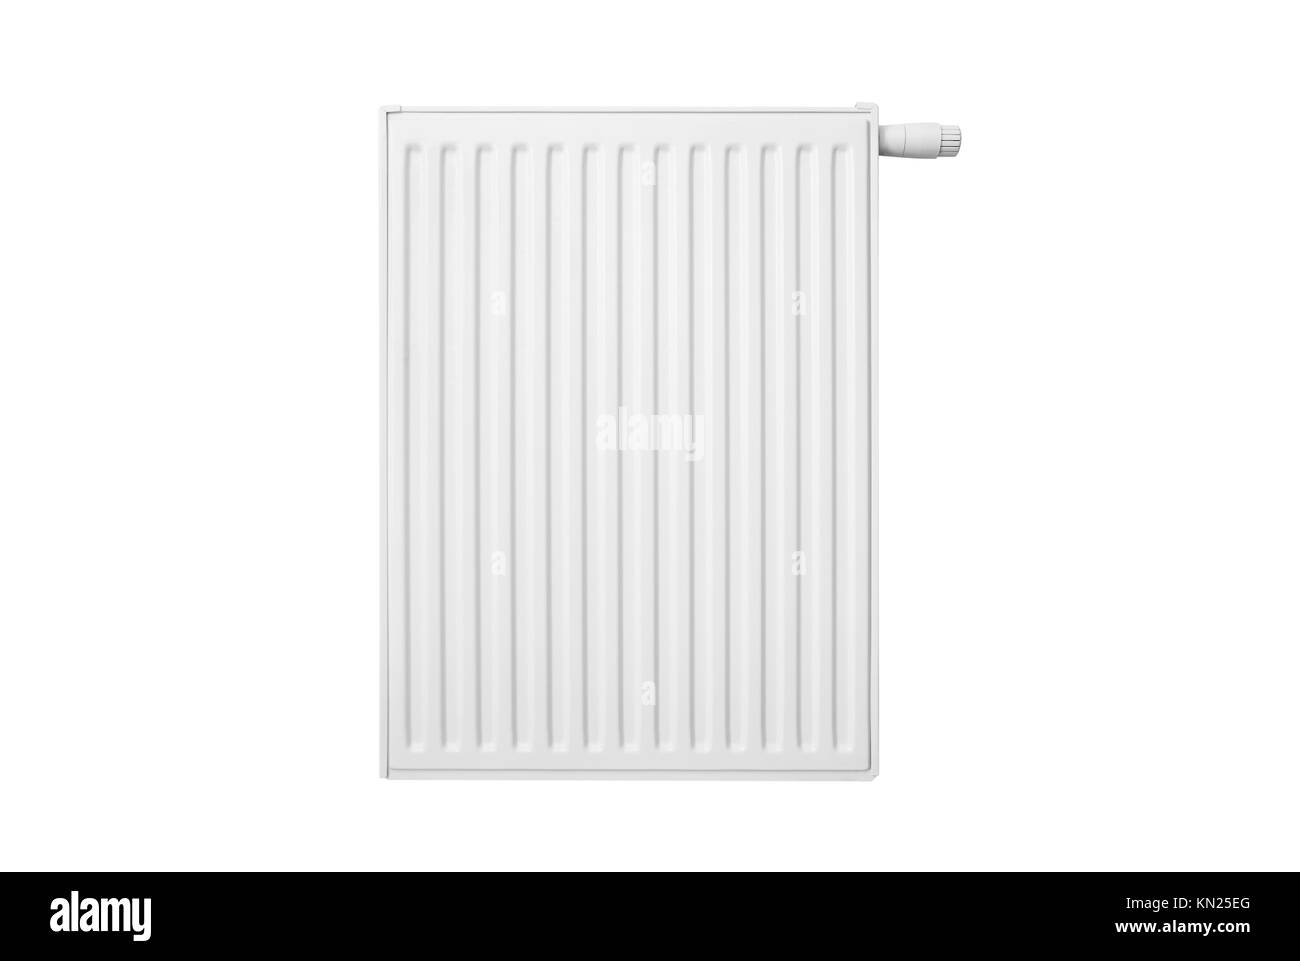 Le radiateur isolé sur fond blanc. le radiateur de chauffage blanc métal central concept d'eau isolées avant Banque D'Images